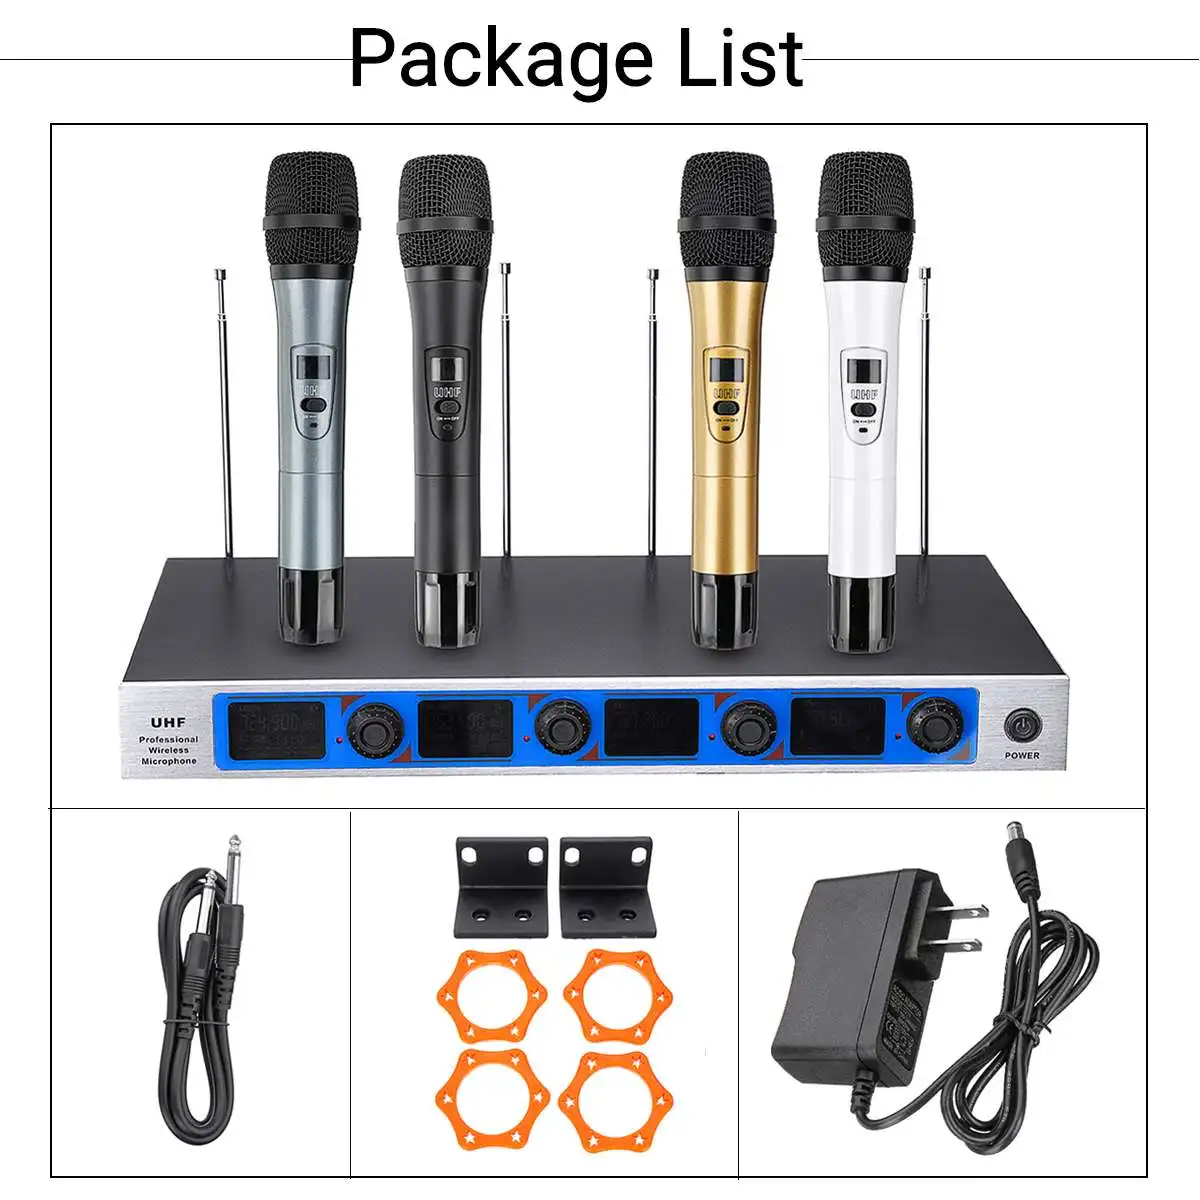 4 Портативный UHF беспроводной микрофон системы динамический профессиональный 4 канала беспроводной для Karoke системы KTV речи Вечерние